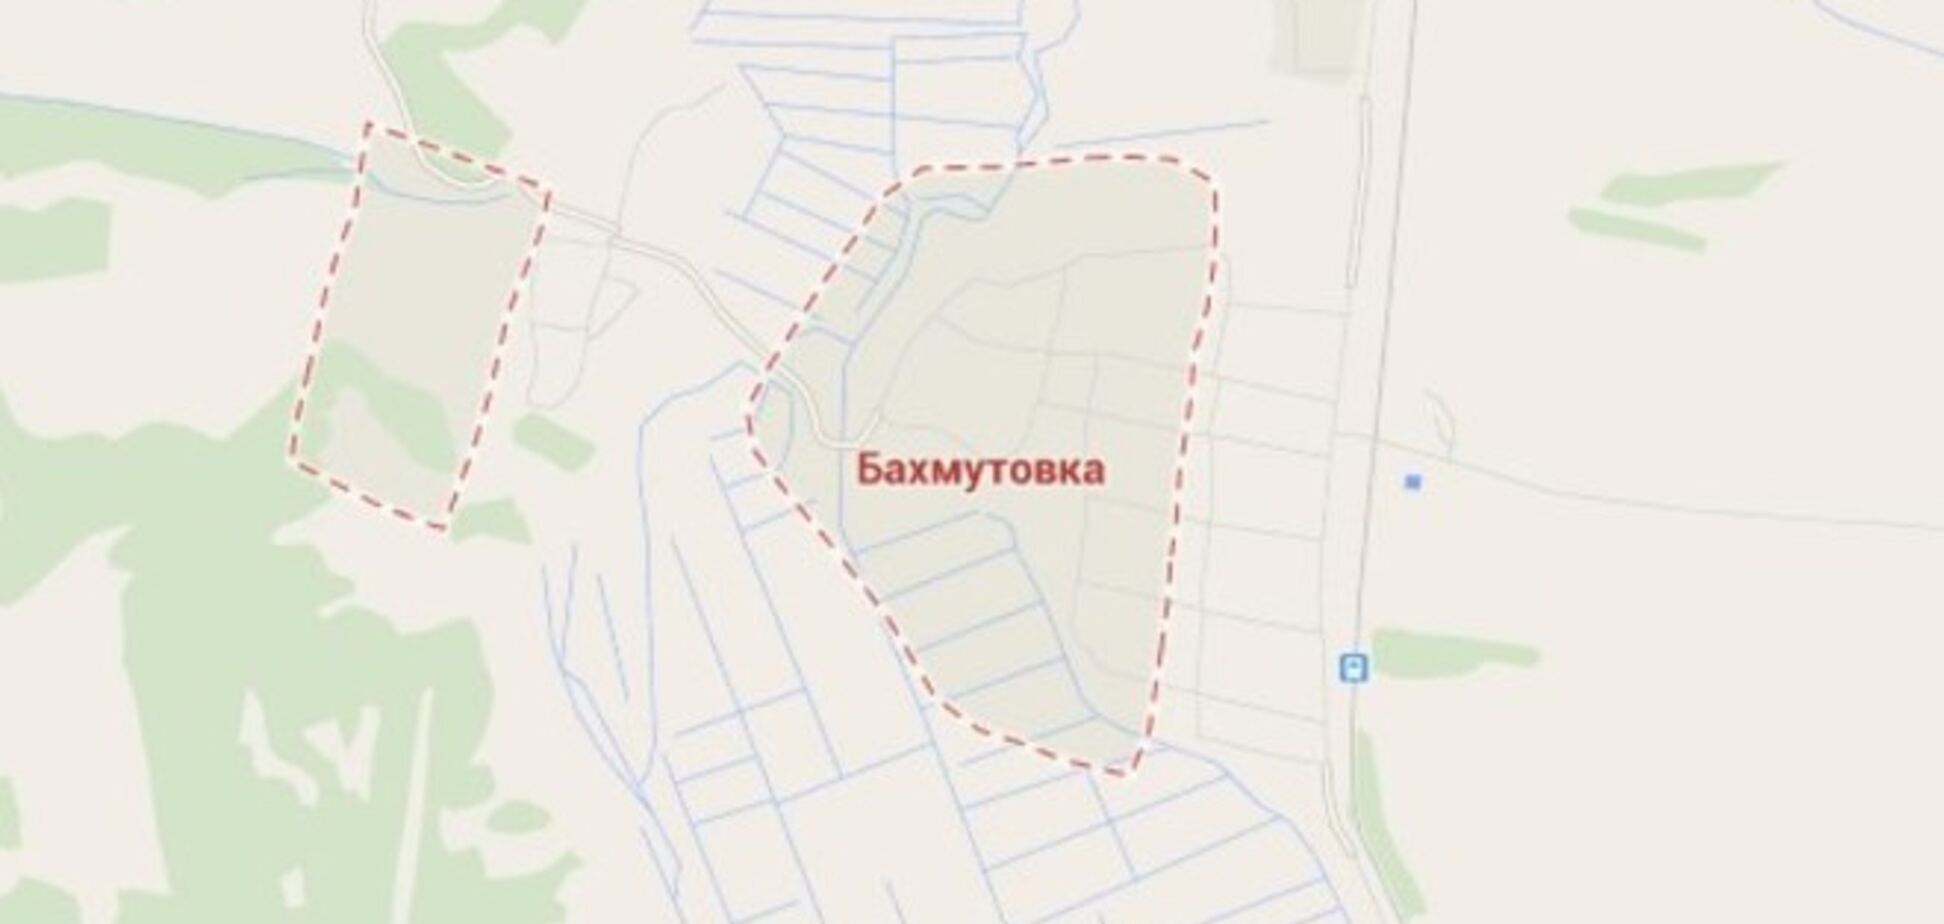 Казаки-оппозиционеры 'ЛНР' заявили о взятии в плен украинских военных в районе Бахмутовки